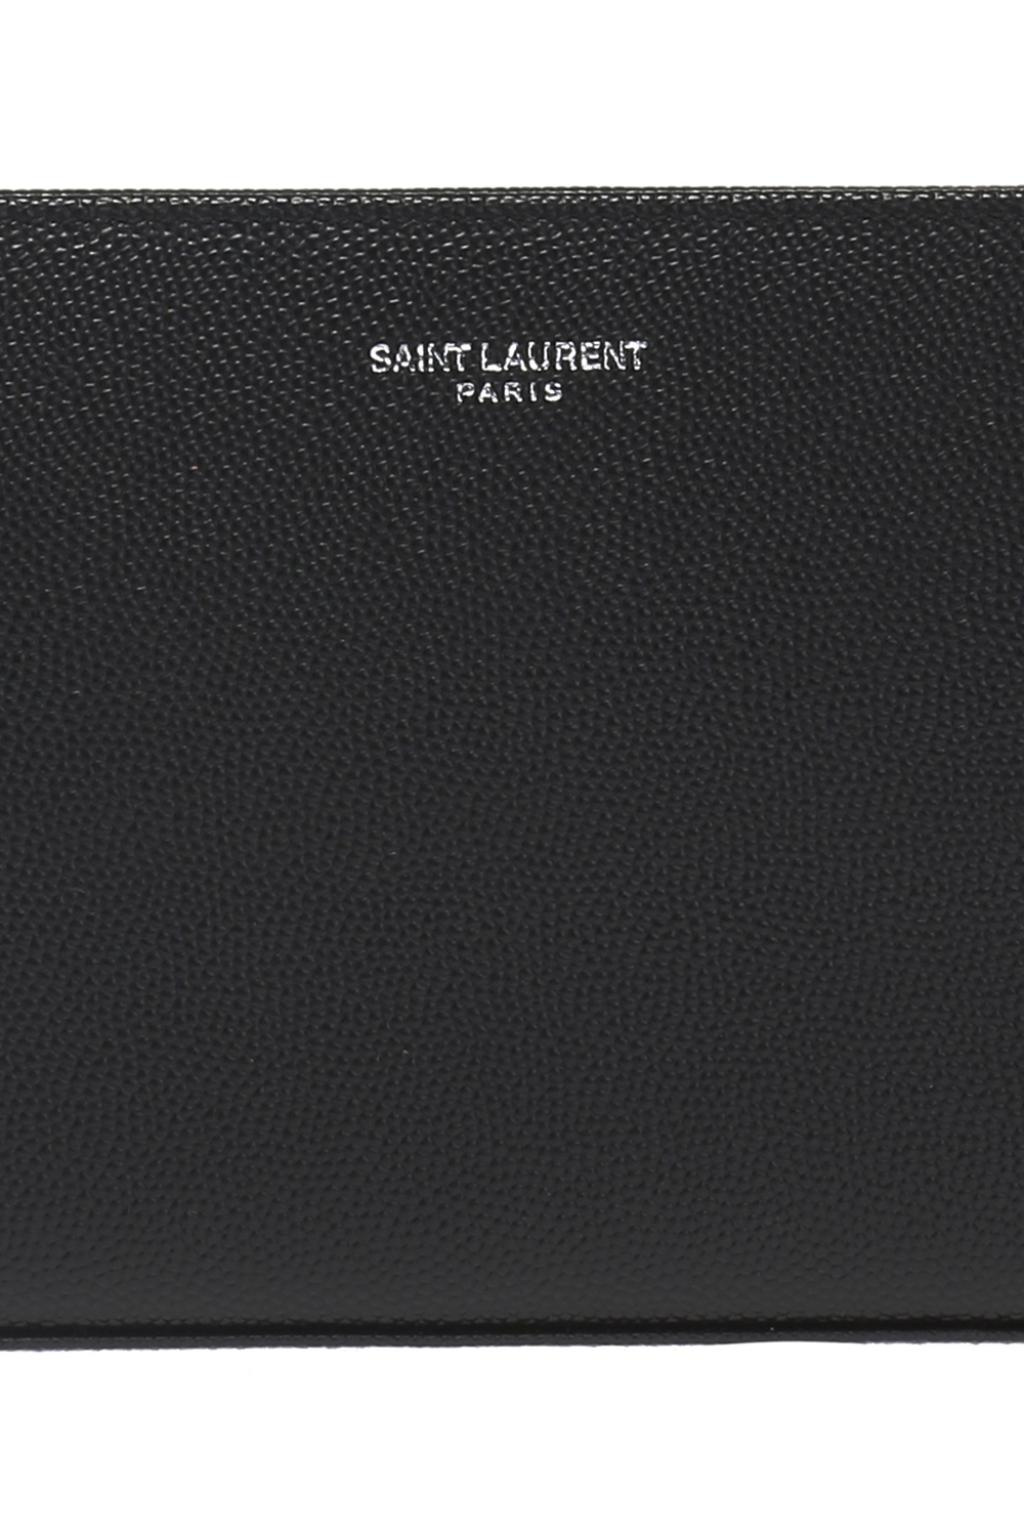 Saint Laurent Wallet with a logo